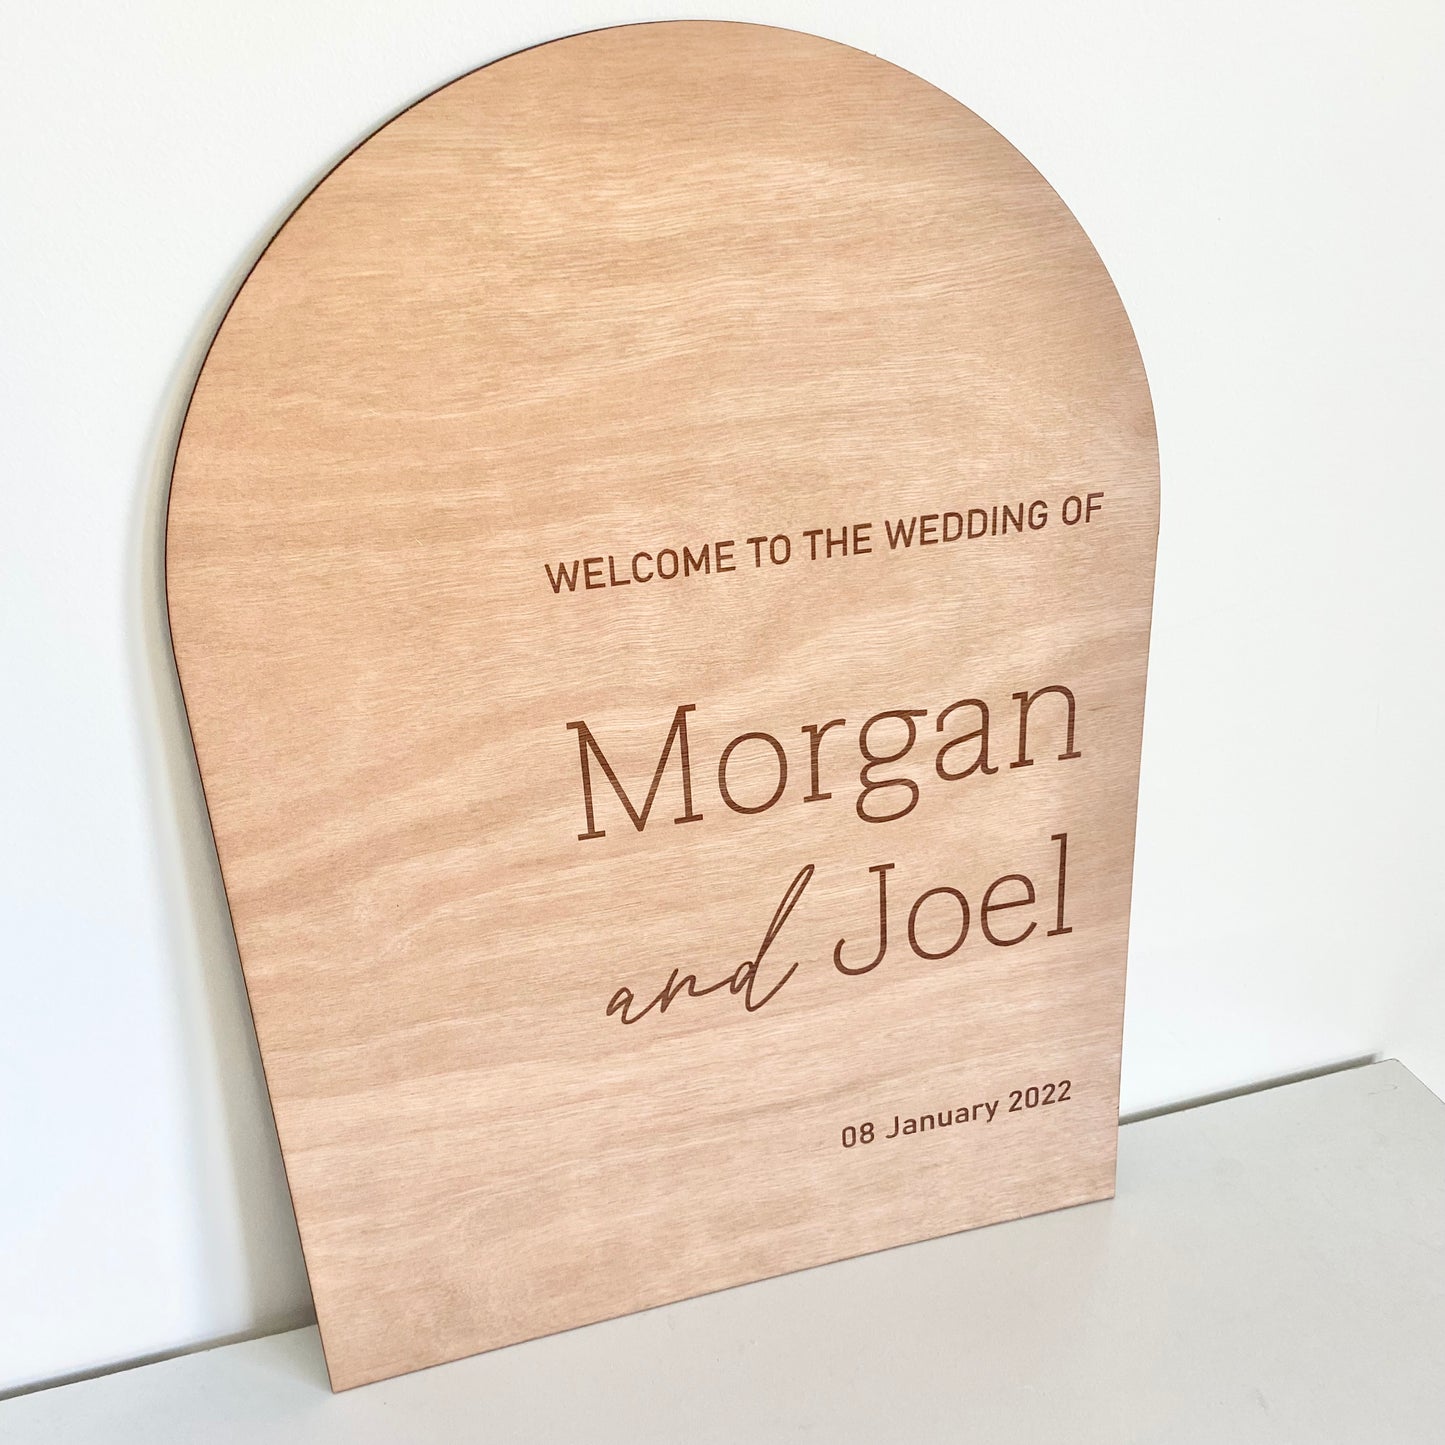 The Morgan wedding sign